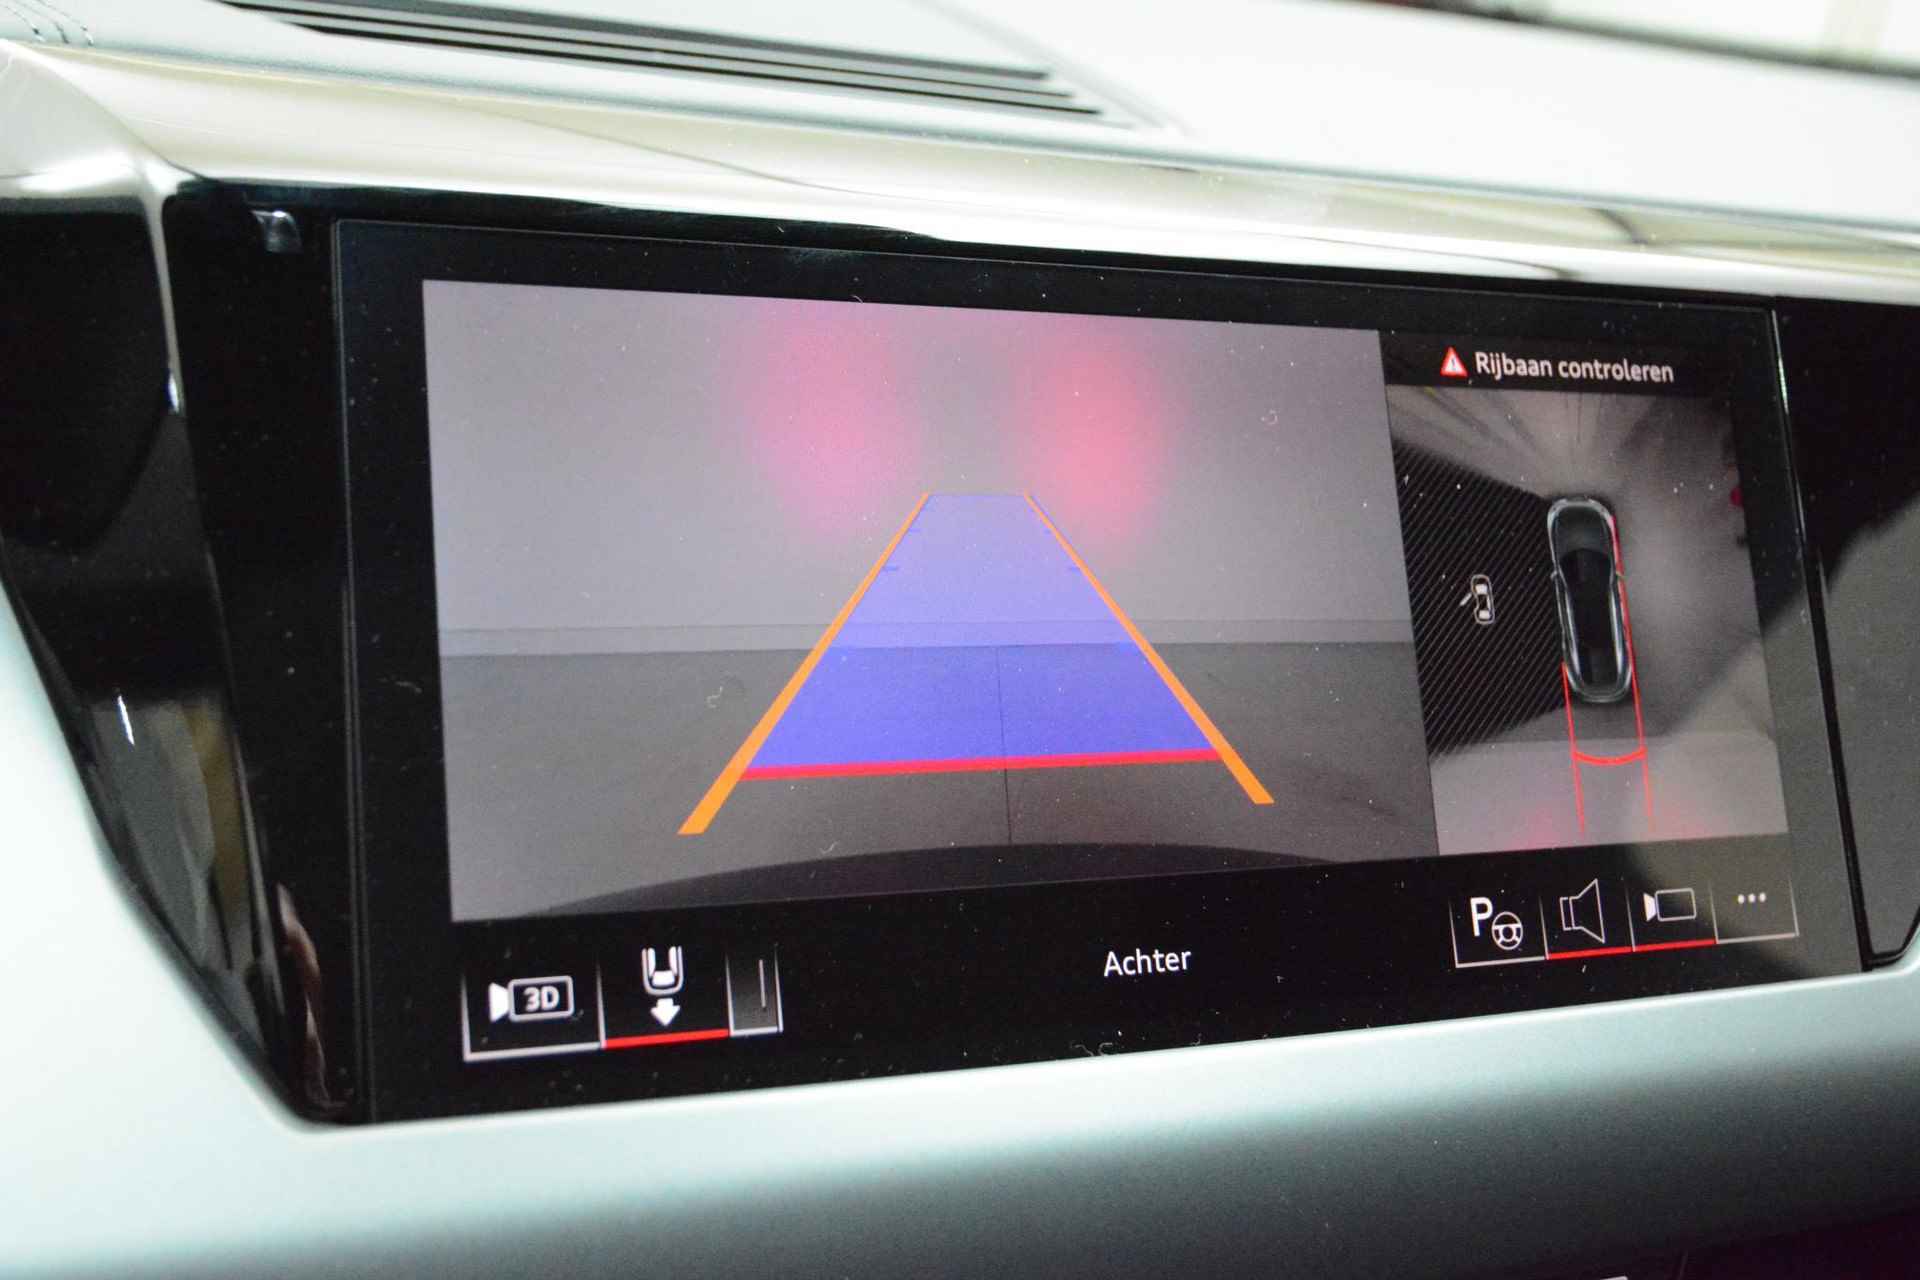 Audi e-tron GT GT Competition 93 kWh 476 PK | Nieuw | NU VAN € 143.900,00 VOOR € 123.900,00!!!! | UNIEKE KLEUR TIEFGRUN ENIGE IN NL!!! | Navigatie | Maxtrix-Laser koplampen | 360 camera | Autonome parkeerfunctie | Dynamische vierwielbesturing | Dodehoek detectie | Glazen panoramadak | Head-up display | Dynamiekpakket plus | Audi virtual cockpit plus | Stoelverwarming voor en achter | Lichtpakket plus ambient light | Optiekpakket zwart plus - 16/30